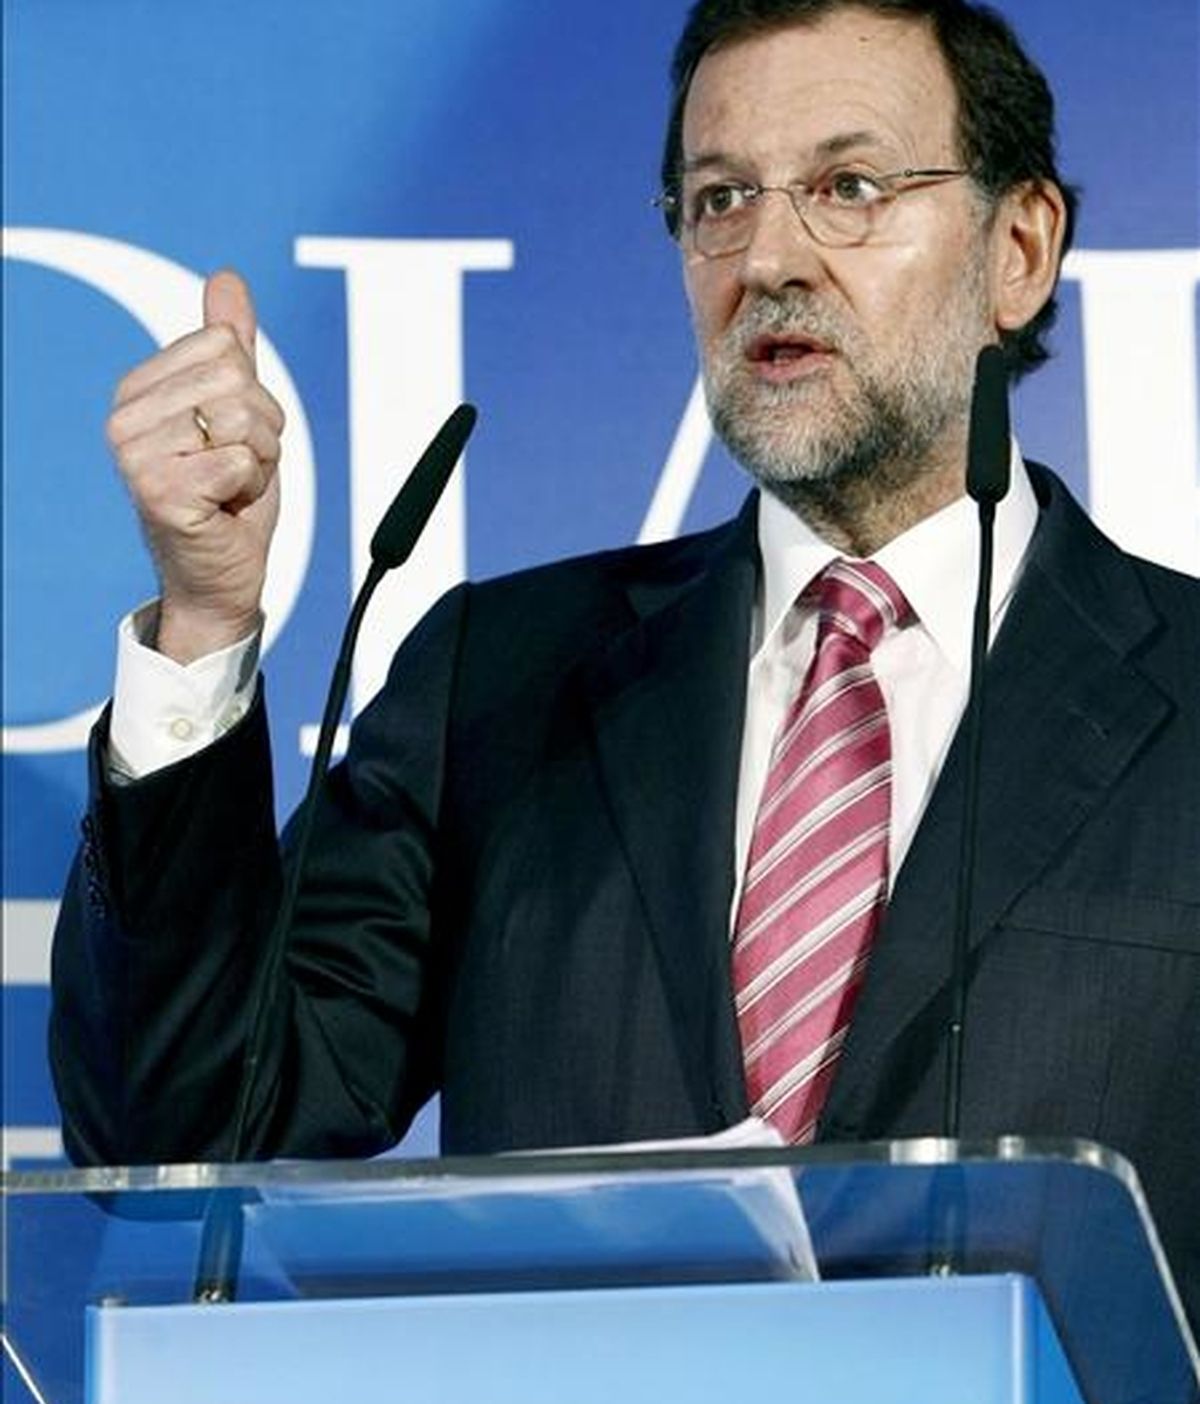 El presidente del PP, Mariano Rajoy, durante su intervención en el Foro de Debate organizado por el Diario Montañés en el Gran Casino del Sardinero, en Santander. EFE